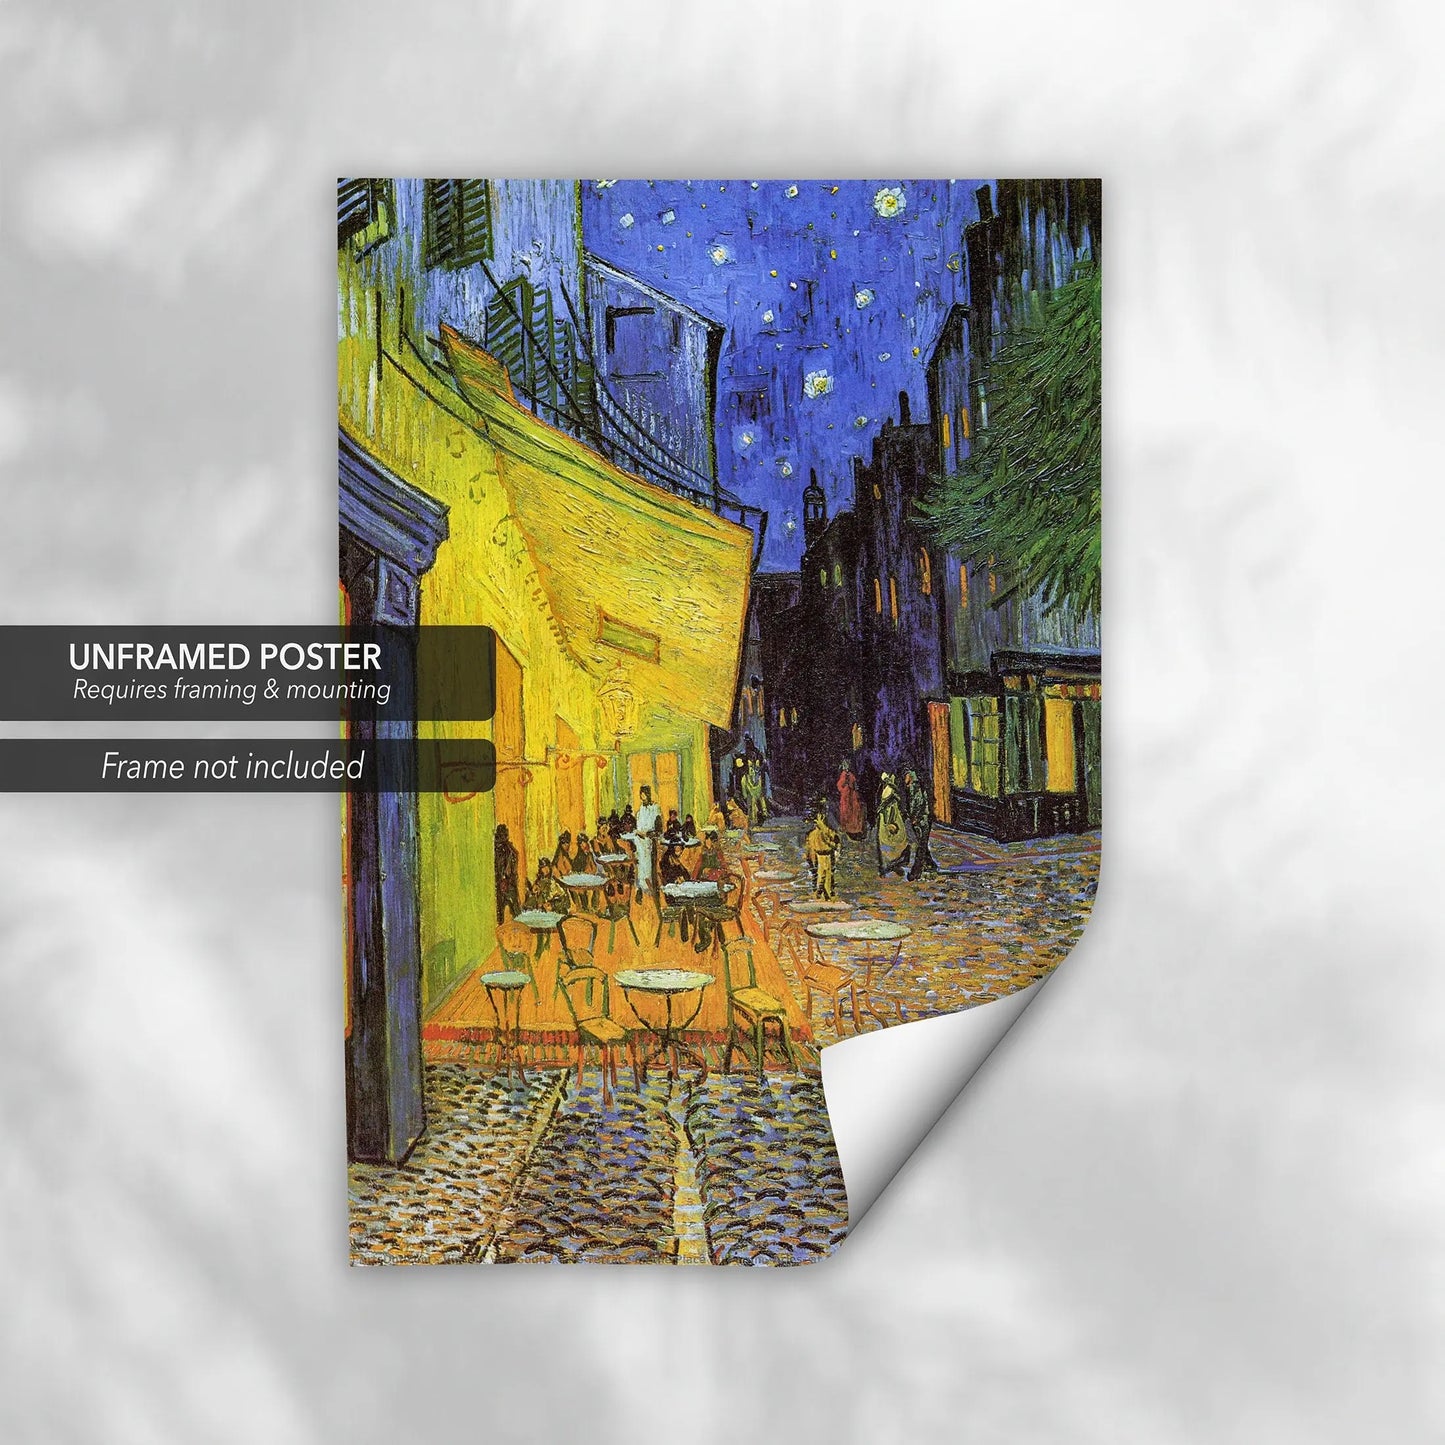 Vincent van Gogh 'Cafe Terrace' 1888 Canvas Wall Art | Poster Print Canvastoria